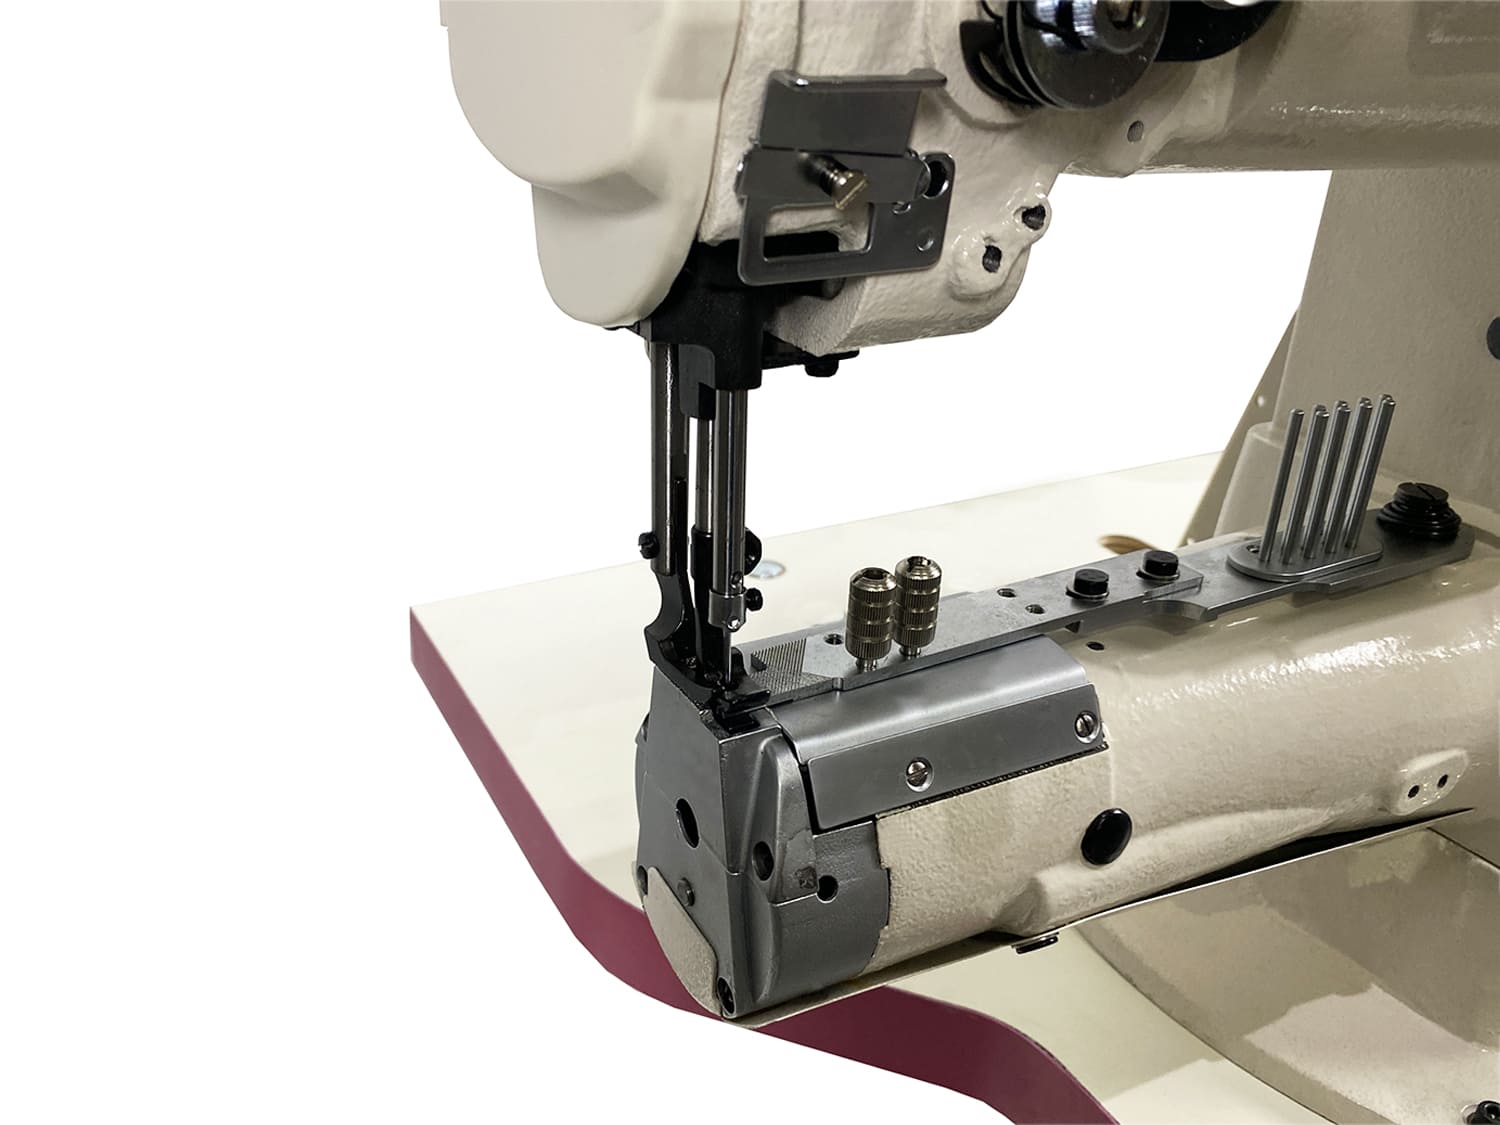 Рукавная швейная машина с тройным продвижением Aurora A-1341V (для окантовки)